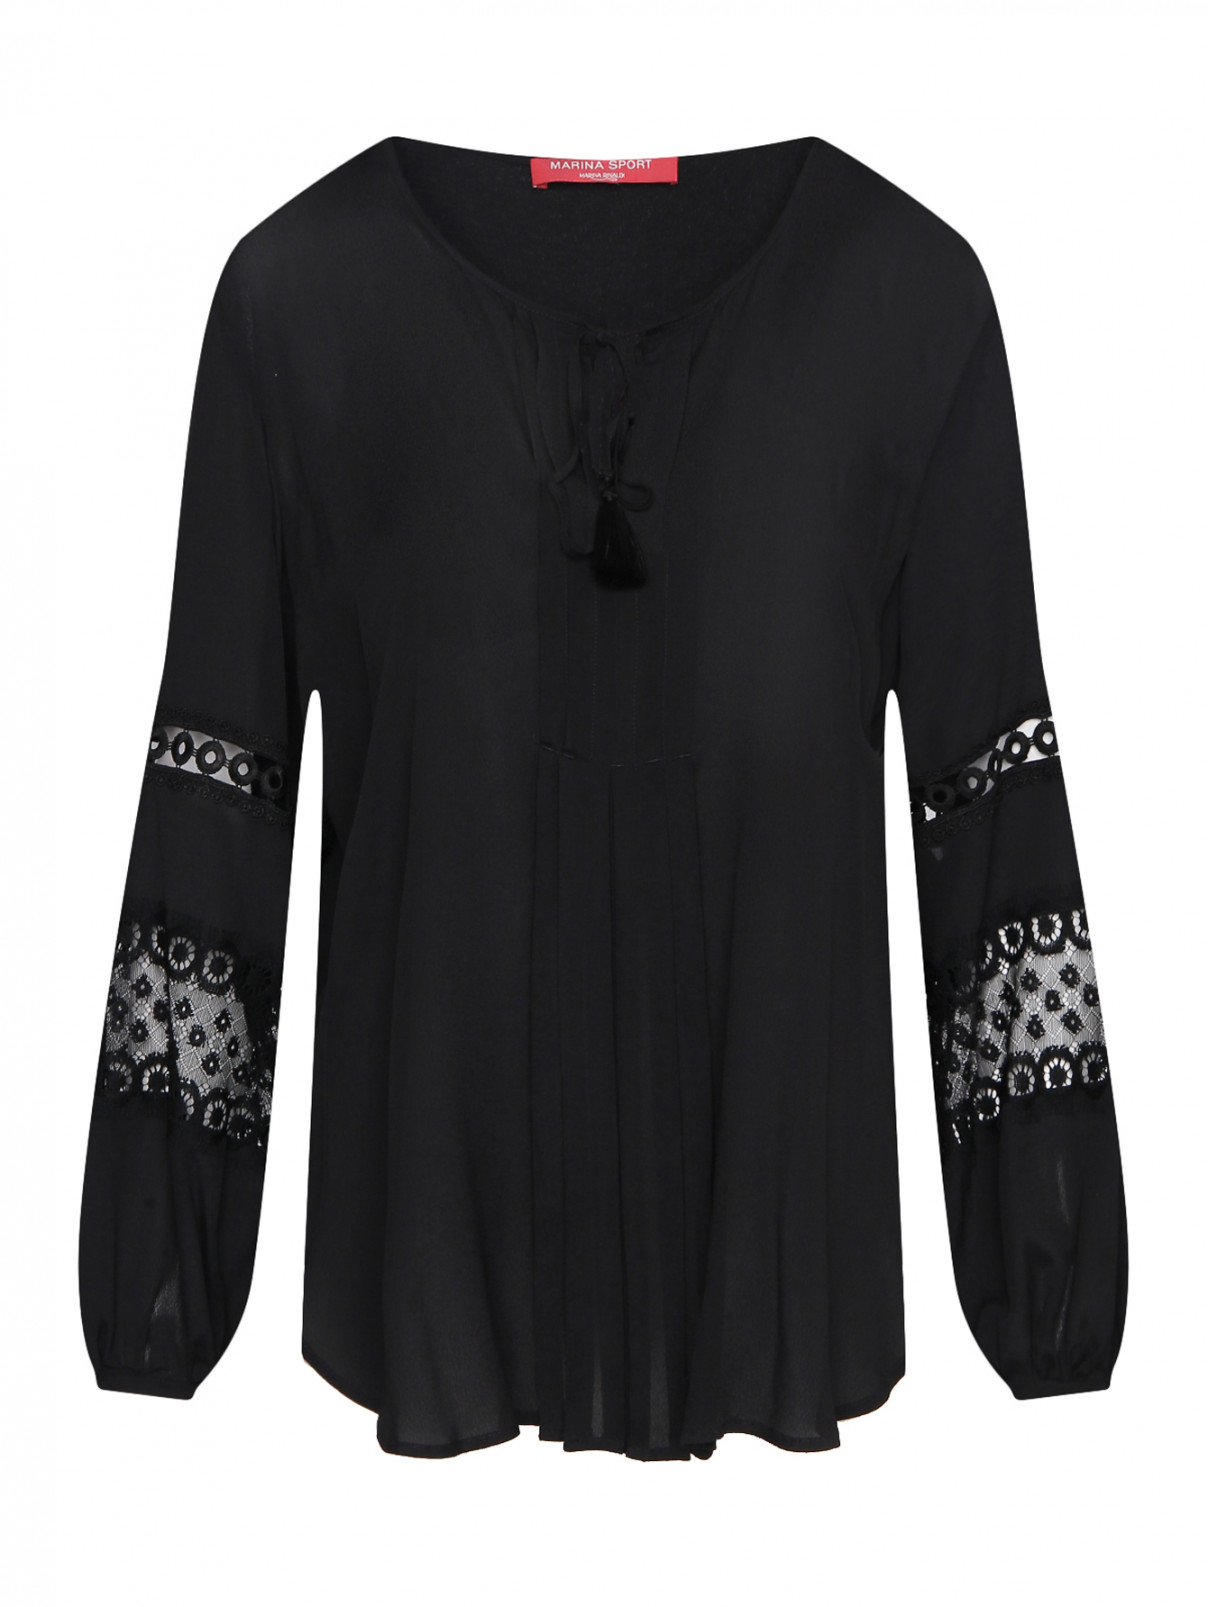 Блуза трикотажная  с вышивкой Marina Rinaldi  –  Общий вид  – Цвет:  Черный